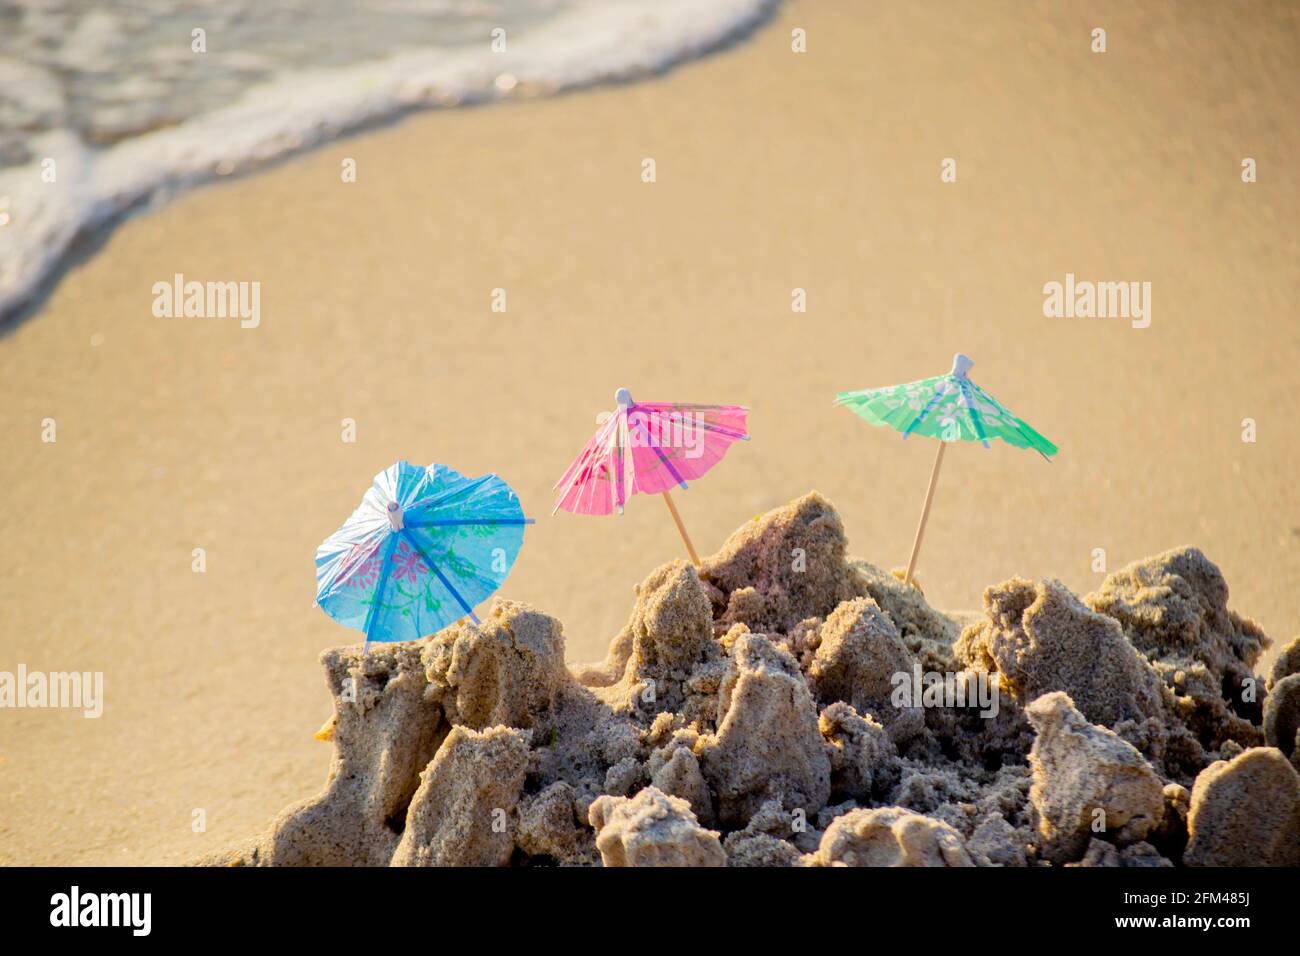 Trois petits parasols de plage en papier pour le stand à cocktails dans le sable Banque D'Images